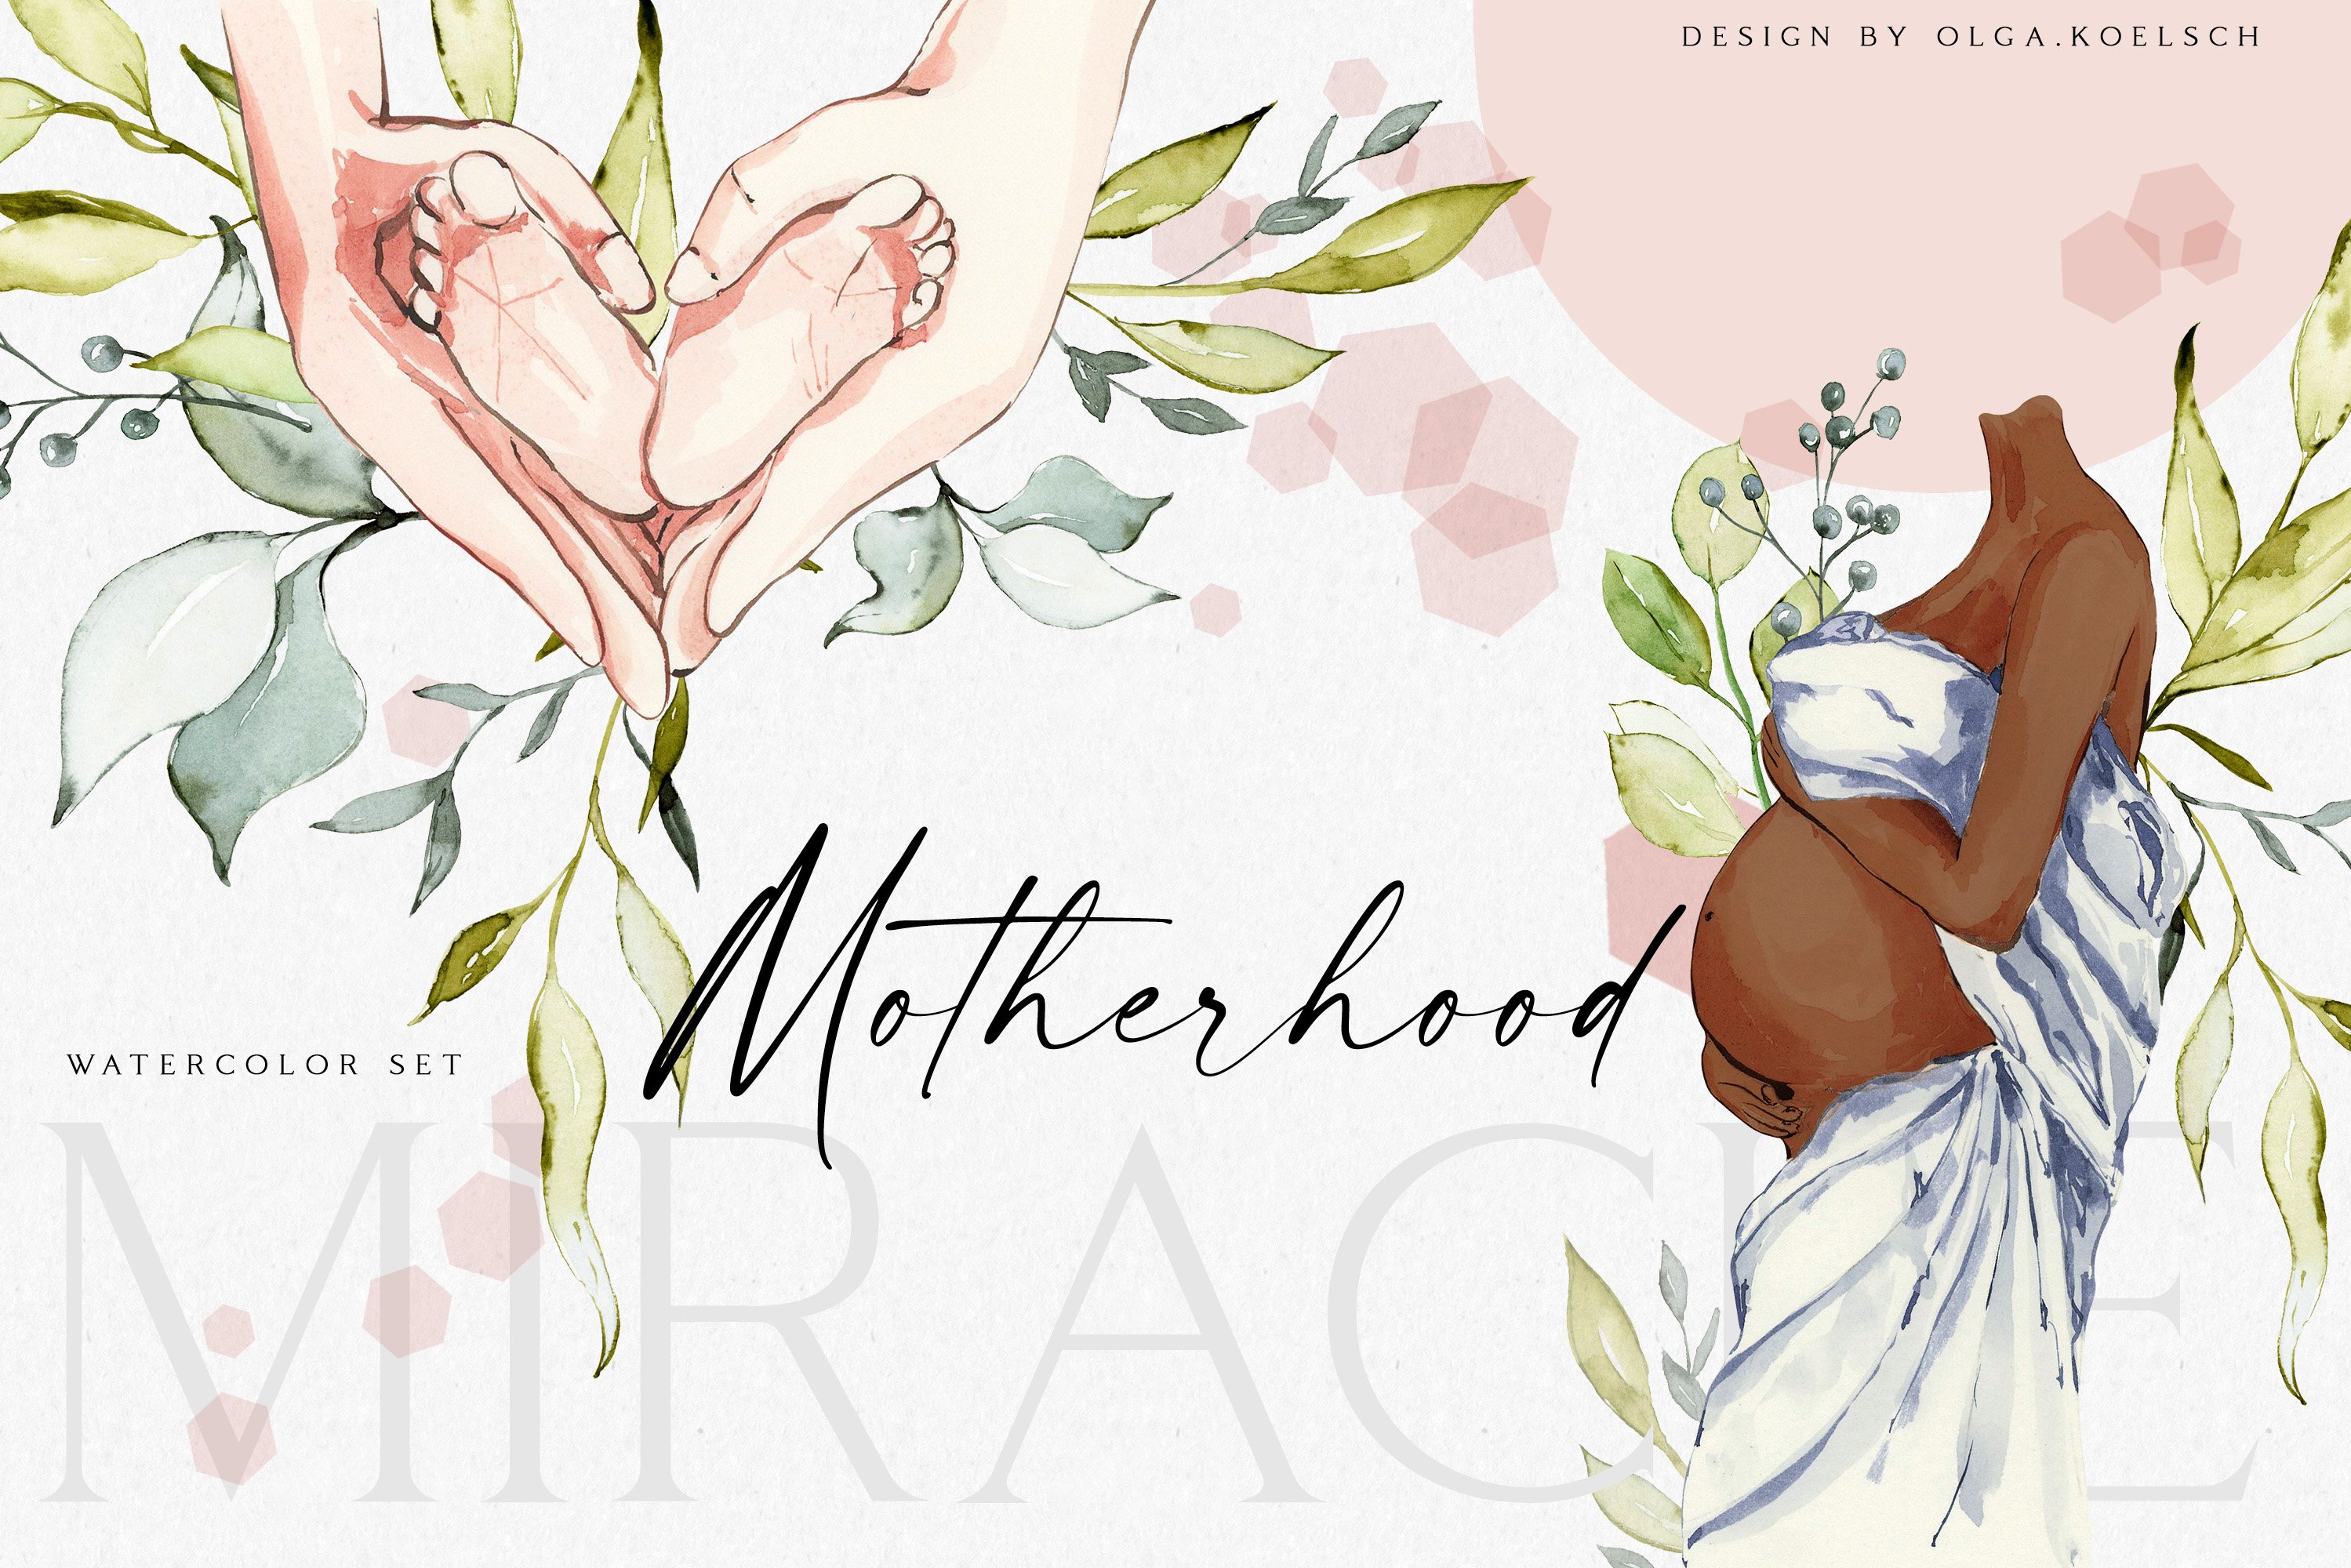 Motherhood Miracle cover image.